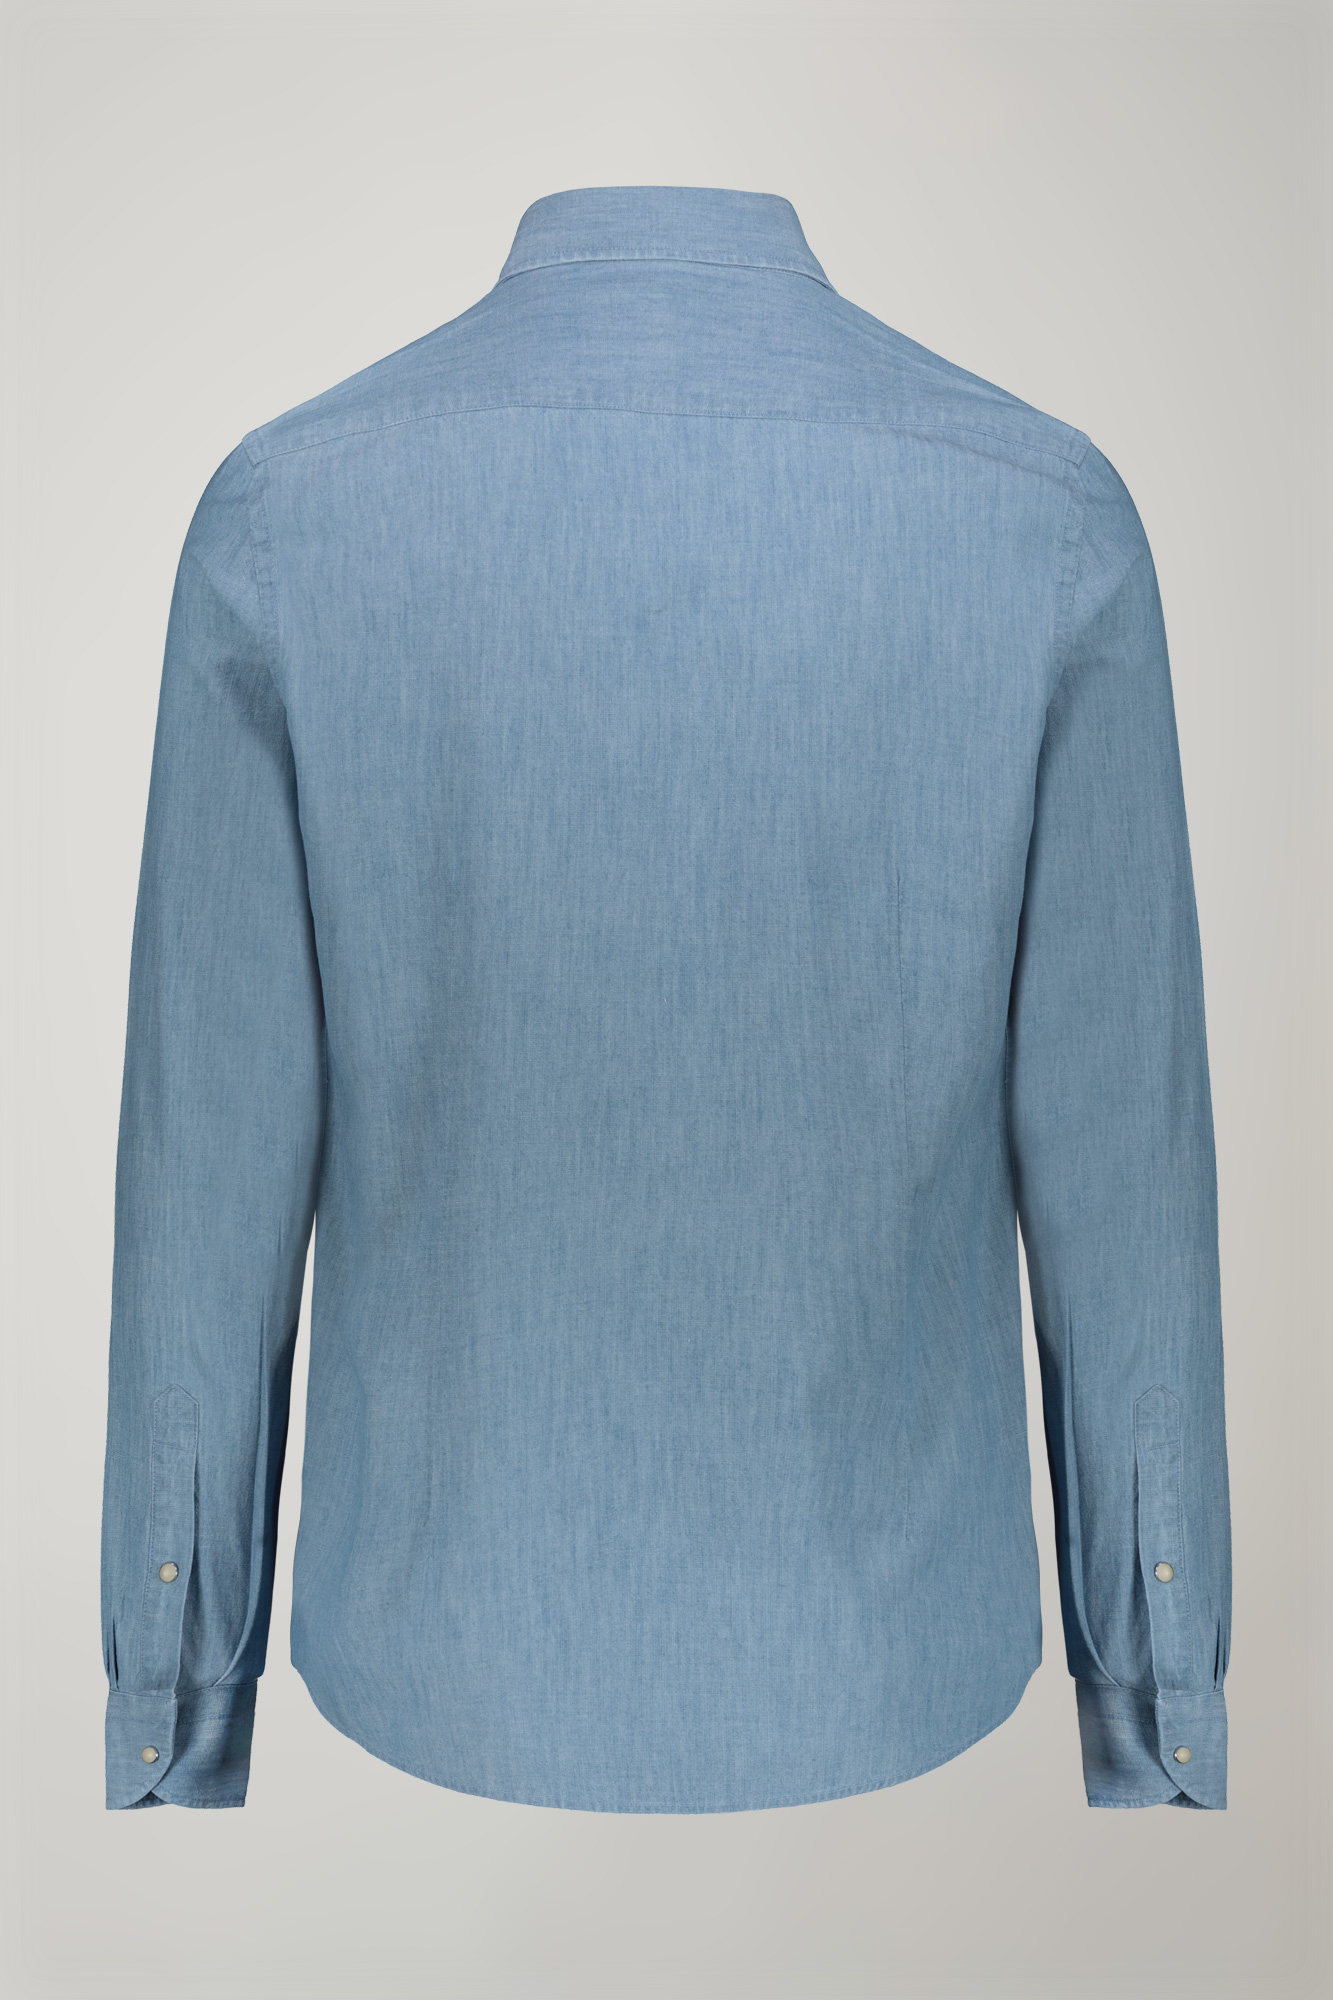 Camicia casual uomo collo classico 100% cotone tessuto chambray denim chiaro comfort fit image number null